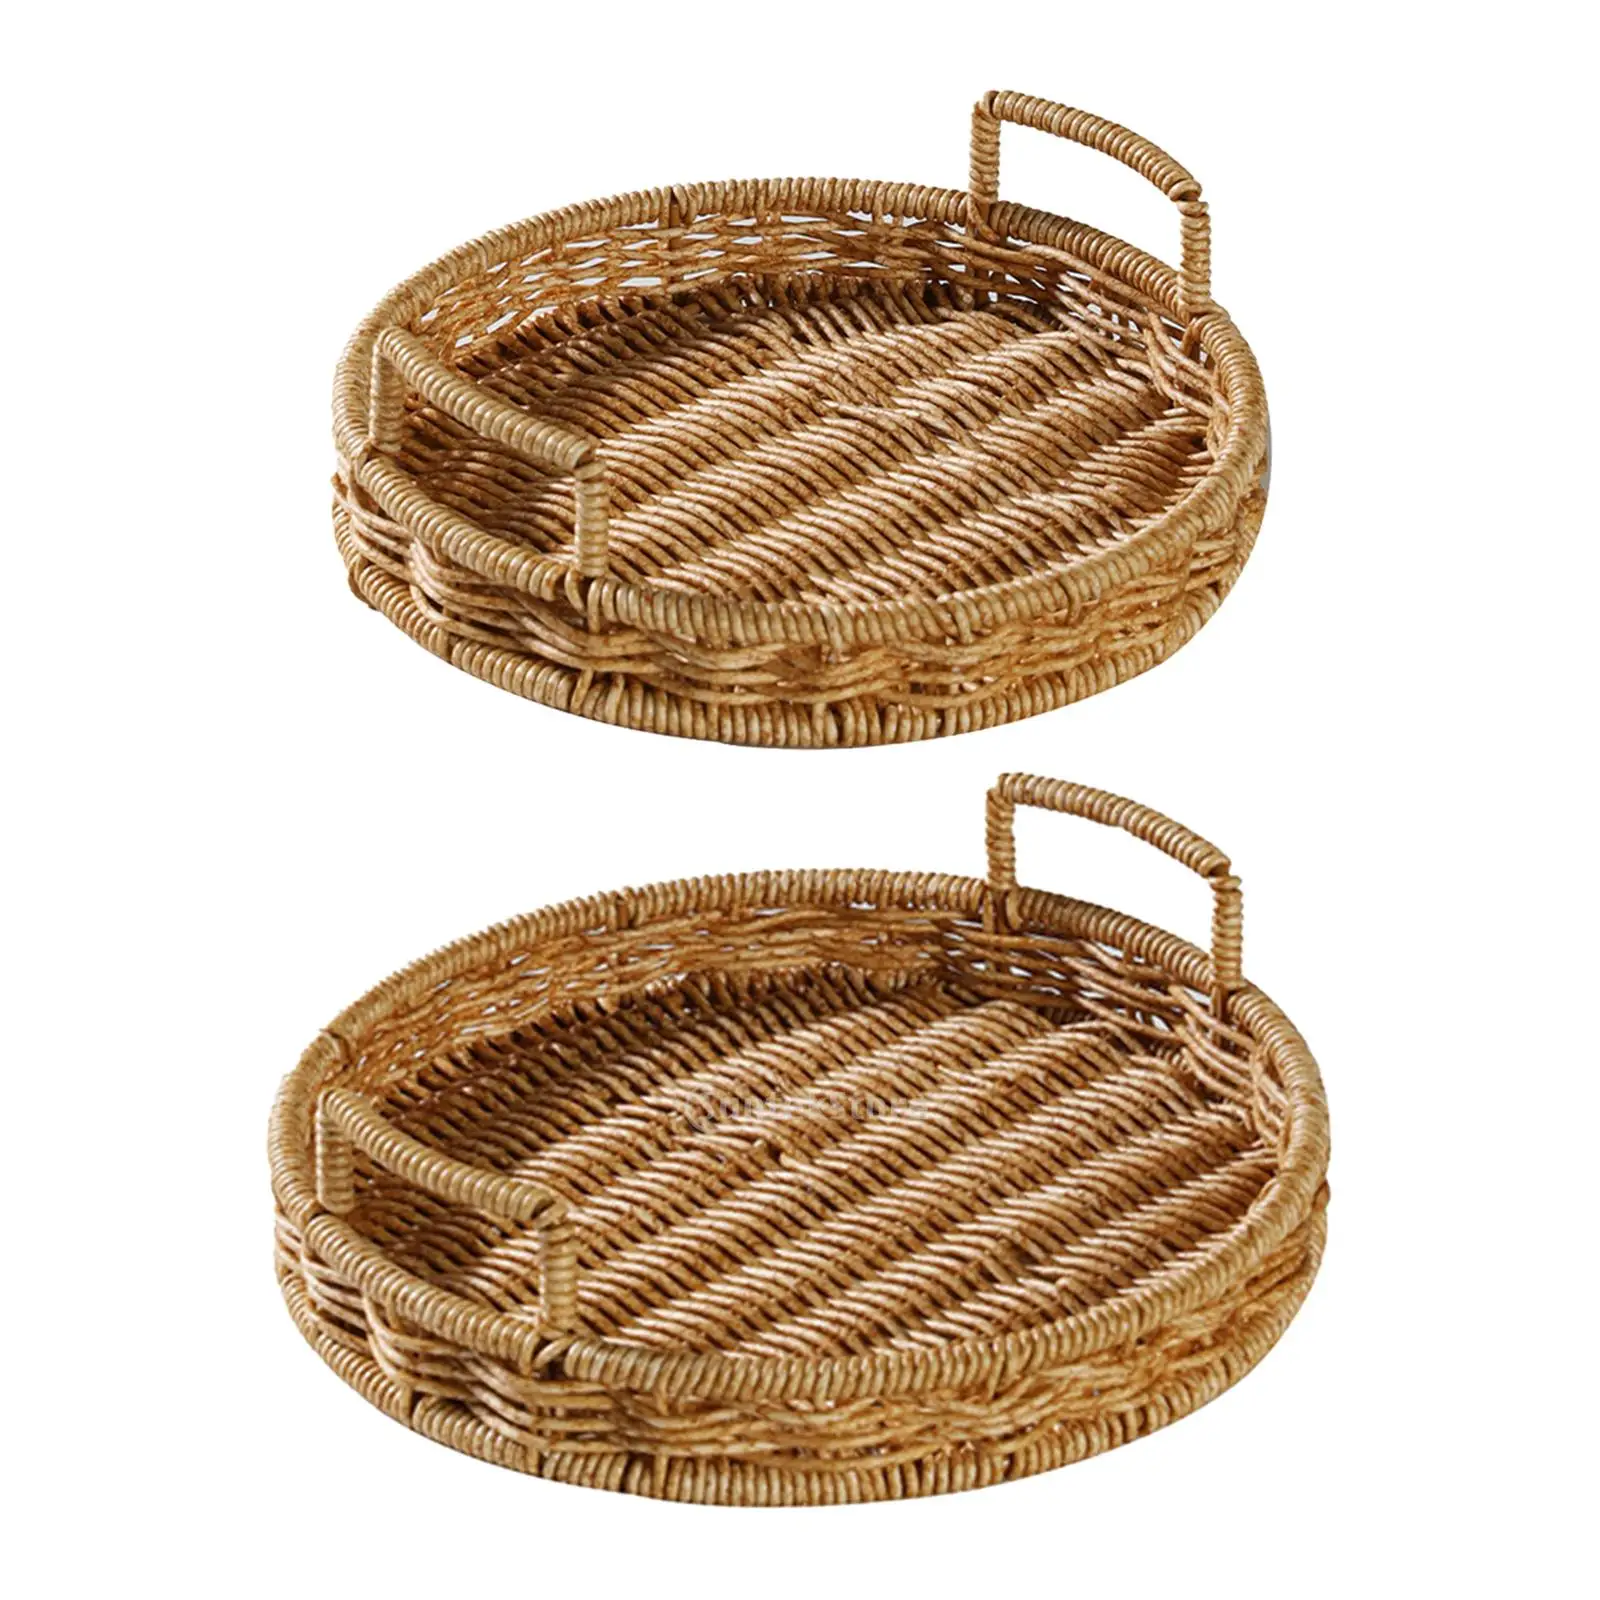 Wicker Bread Tray Wicker Basket Bread Fruit Breakfast Display Rattan Storage Tray for Tea Parties Snack Food Bread